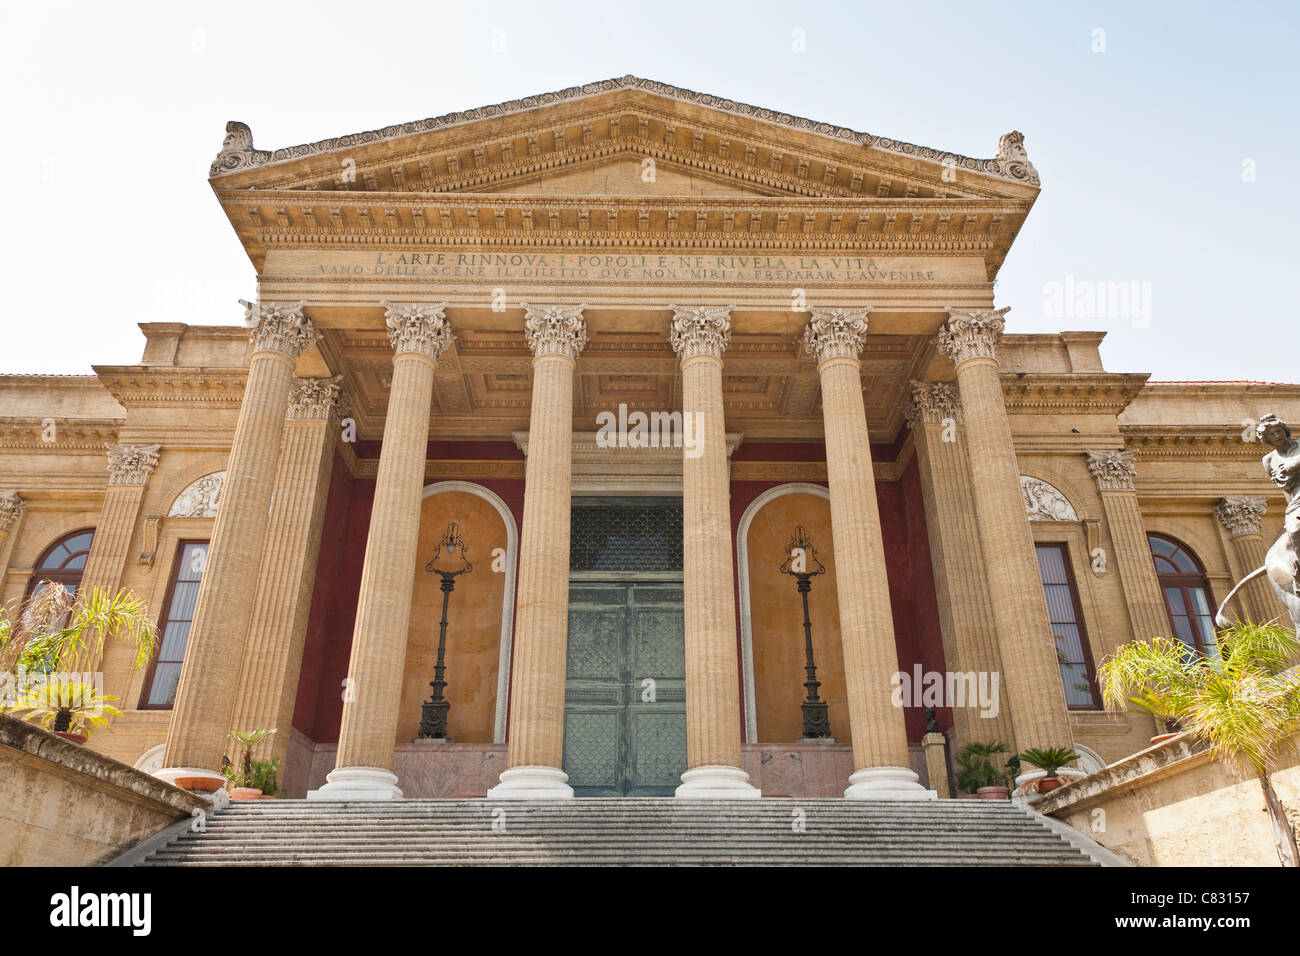 Palermo Opera House, Teatro Massimo, Piazza Giuseppe Verdi, Palermo, Sicily, Italy Stock Photo